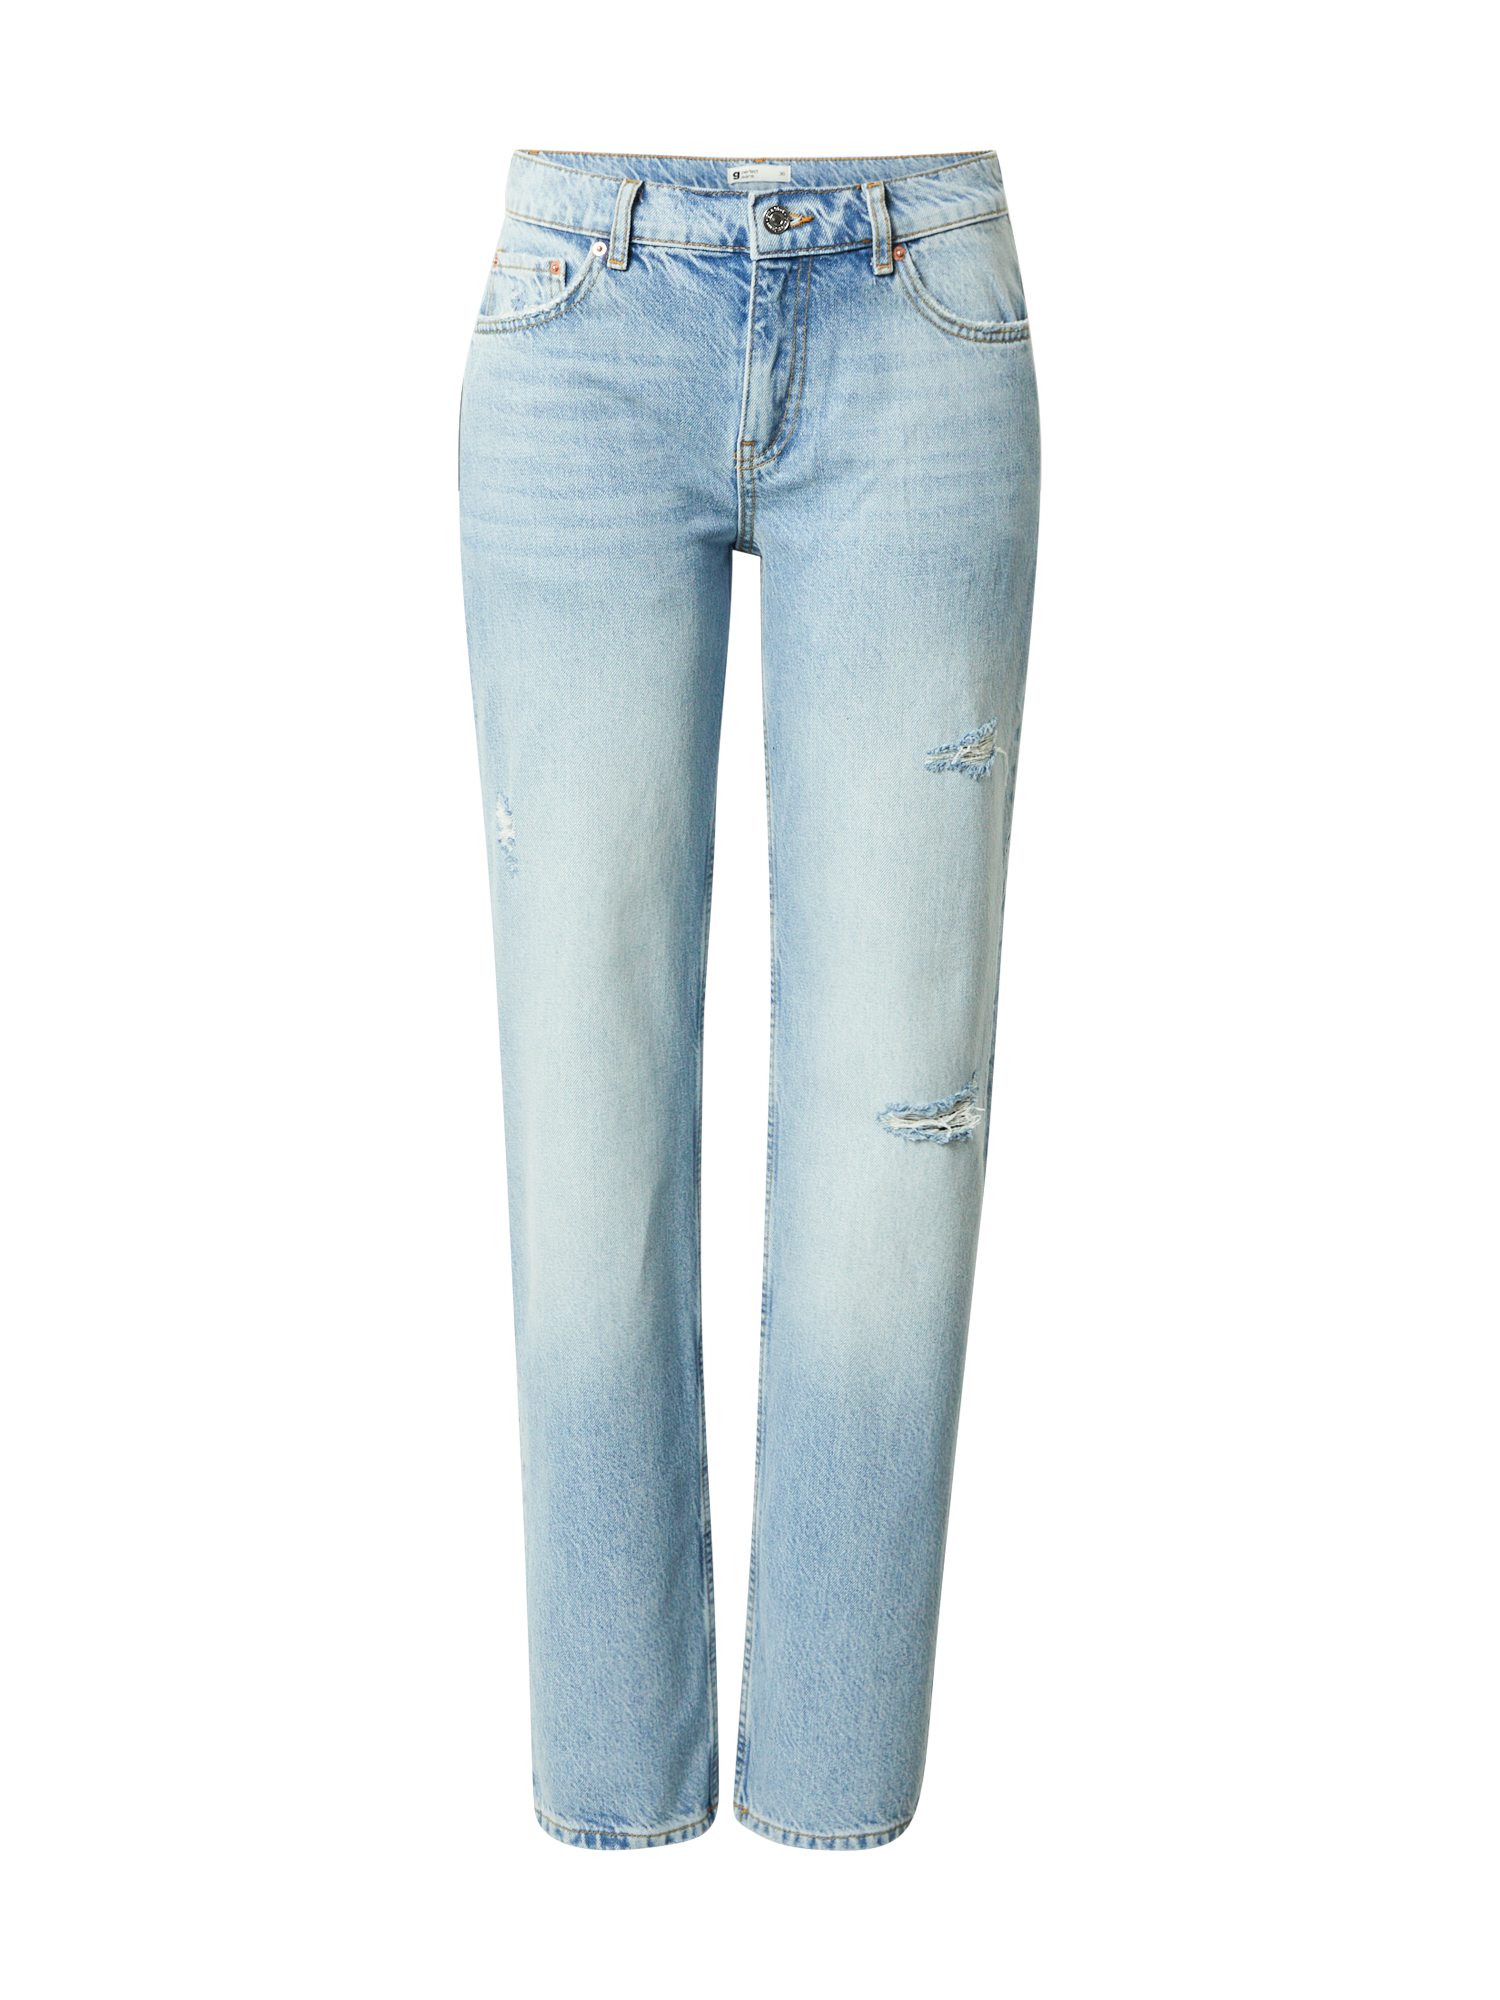 Abbigliamento Donna Gina Tricot Jeans in Blu Chiaro 